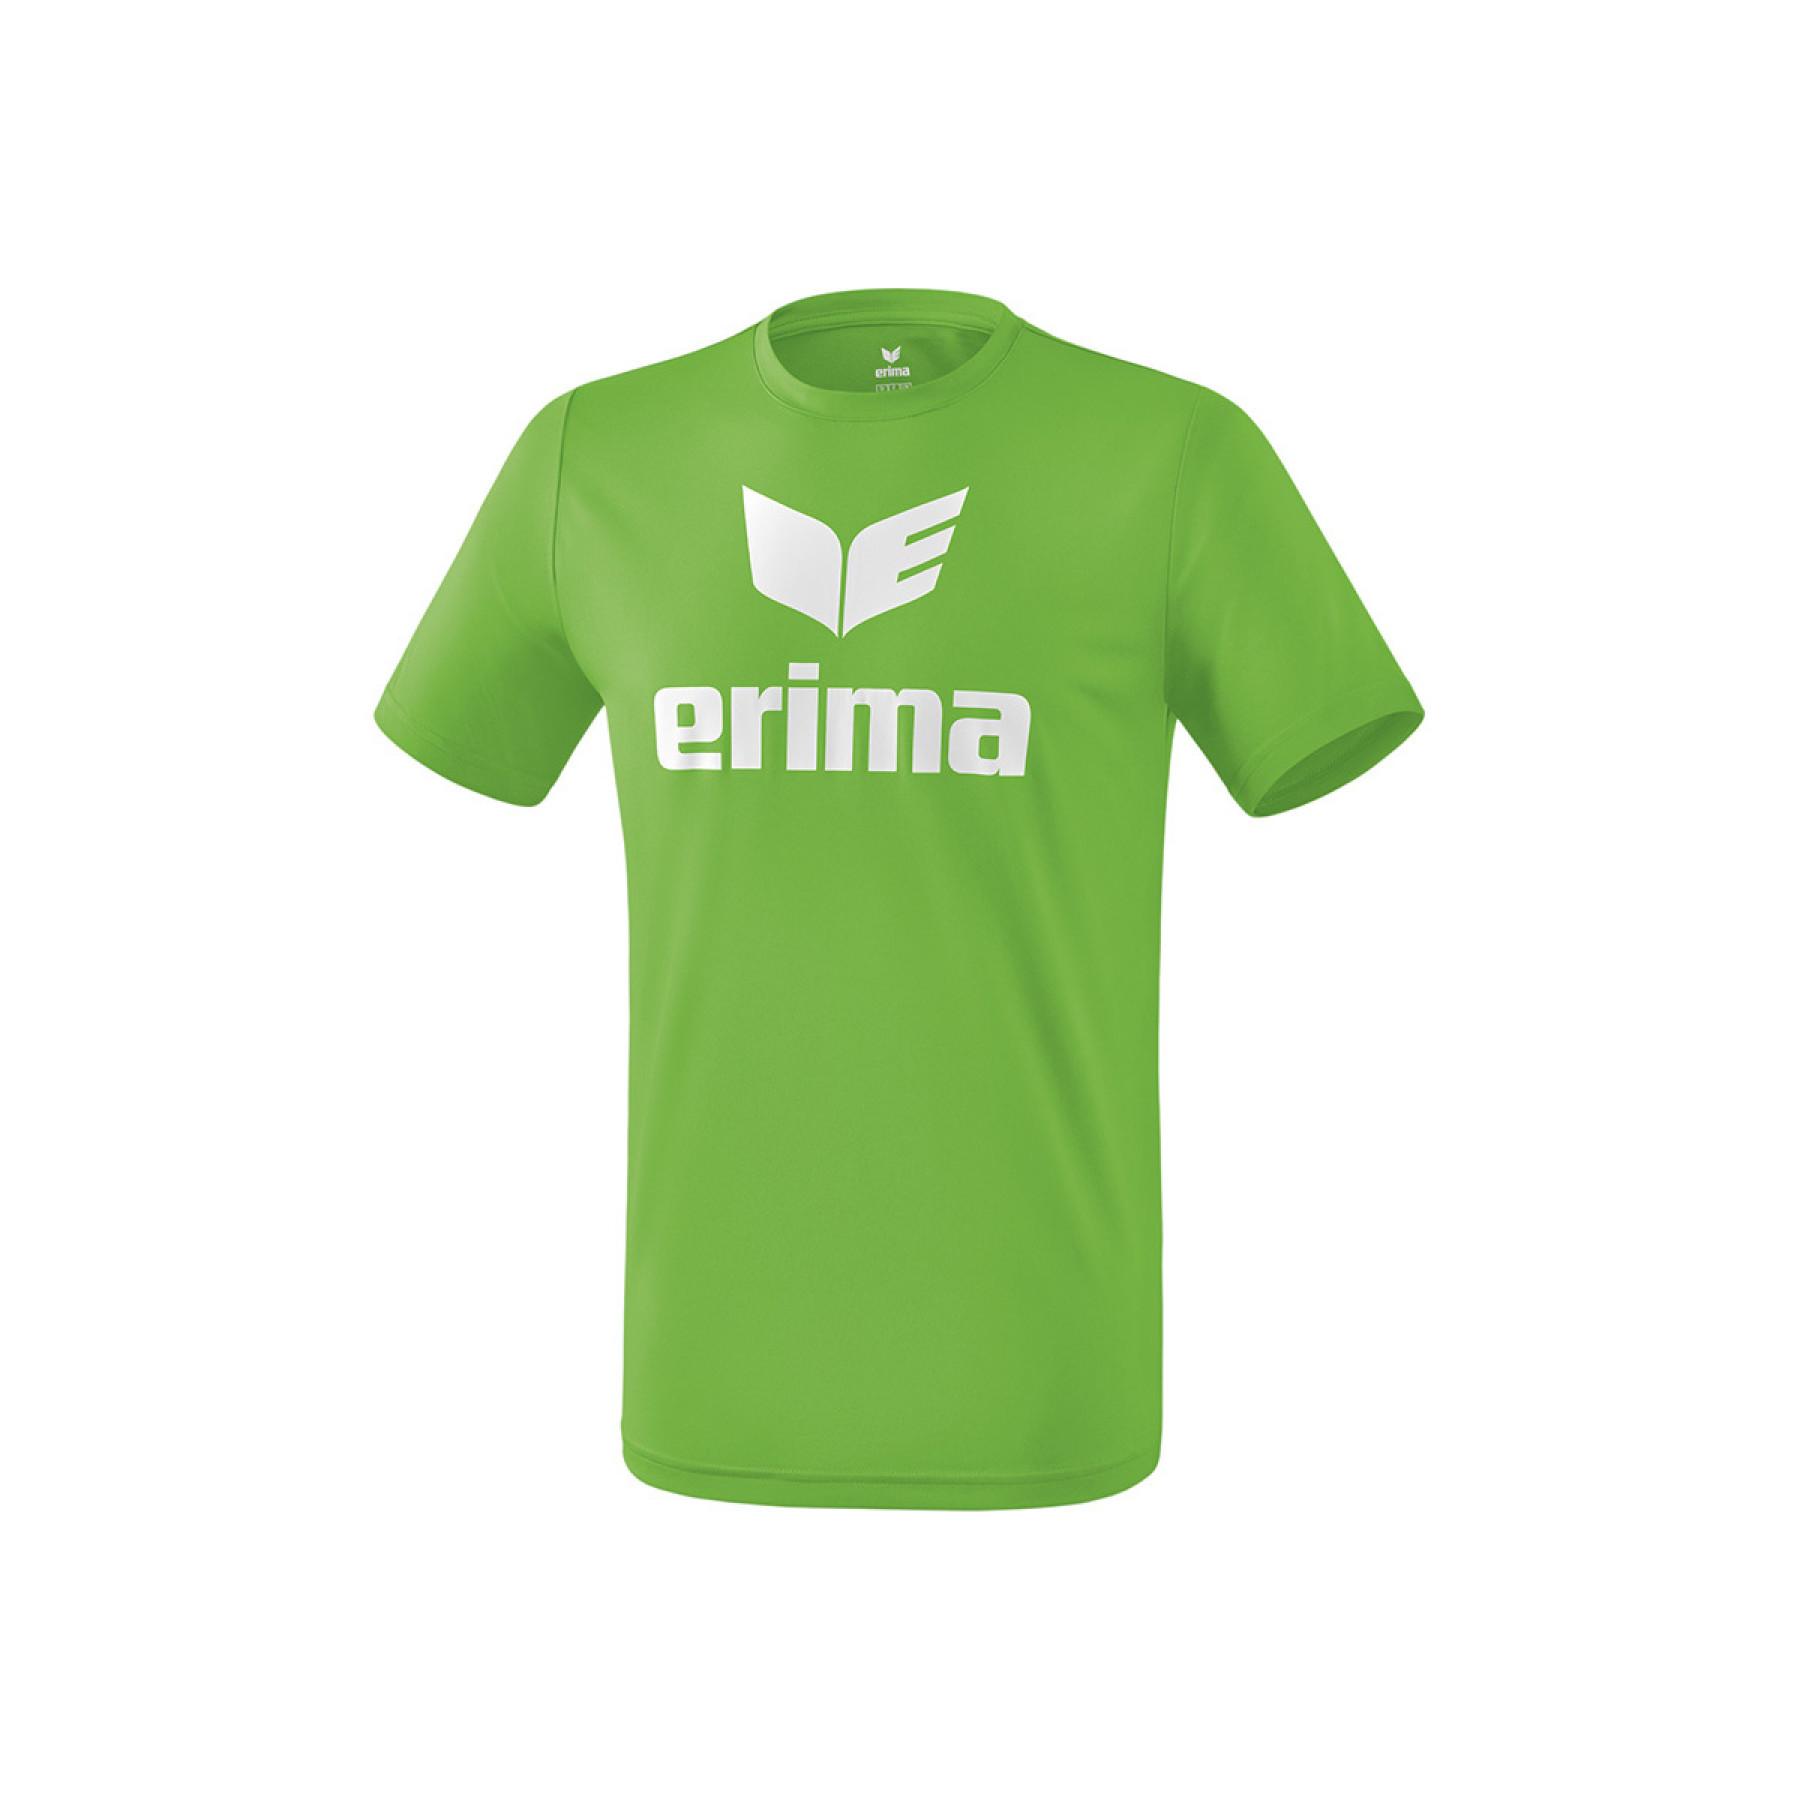 Child's T-shirt Erima promo fonctionnel